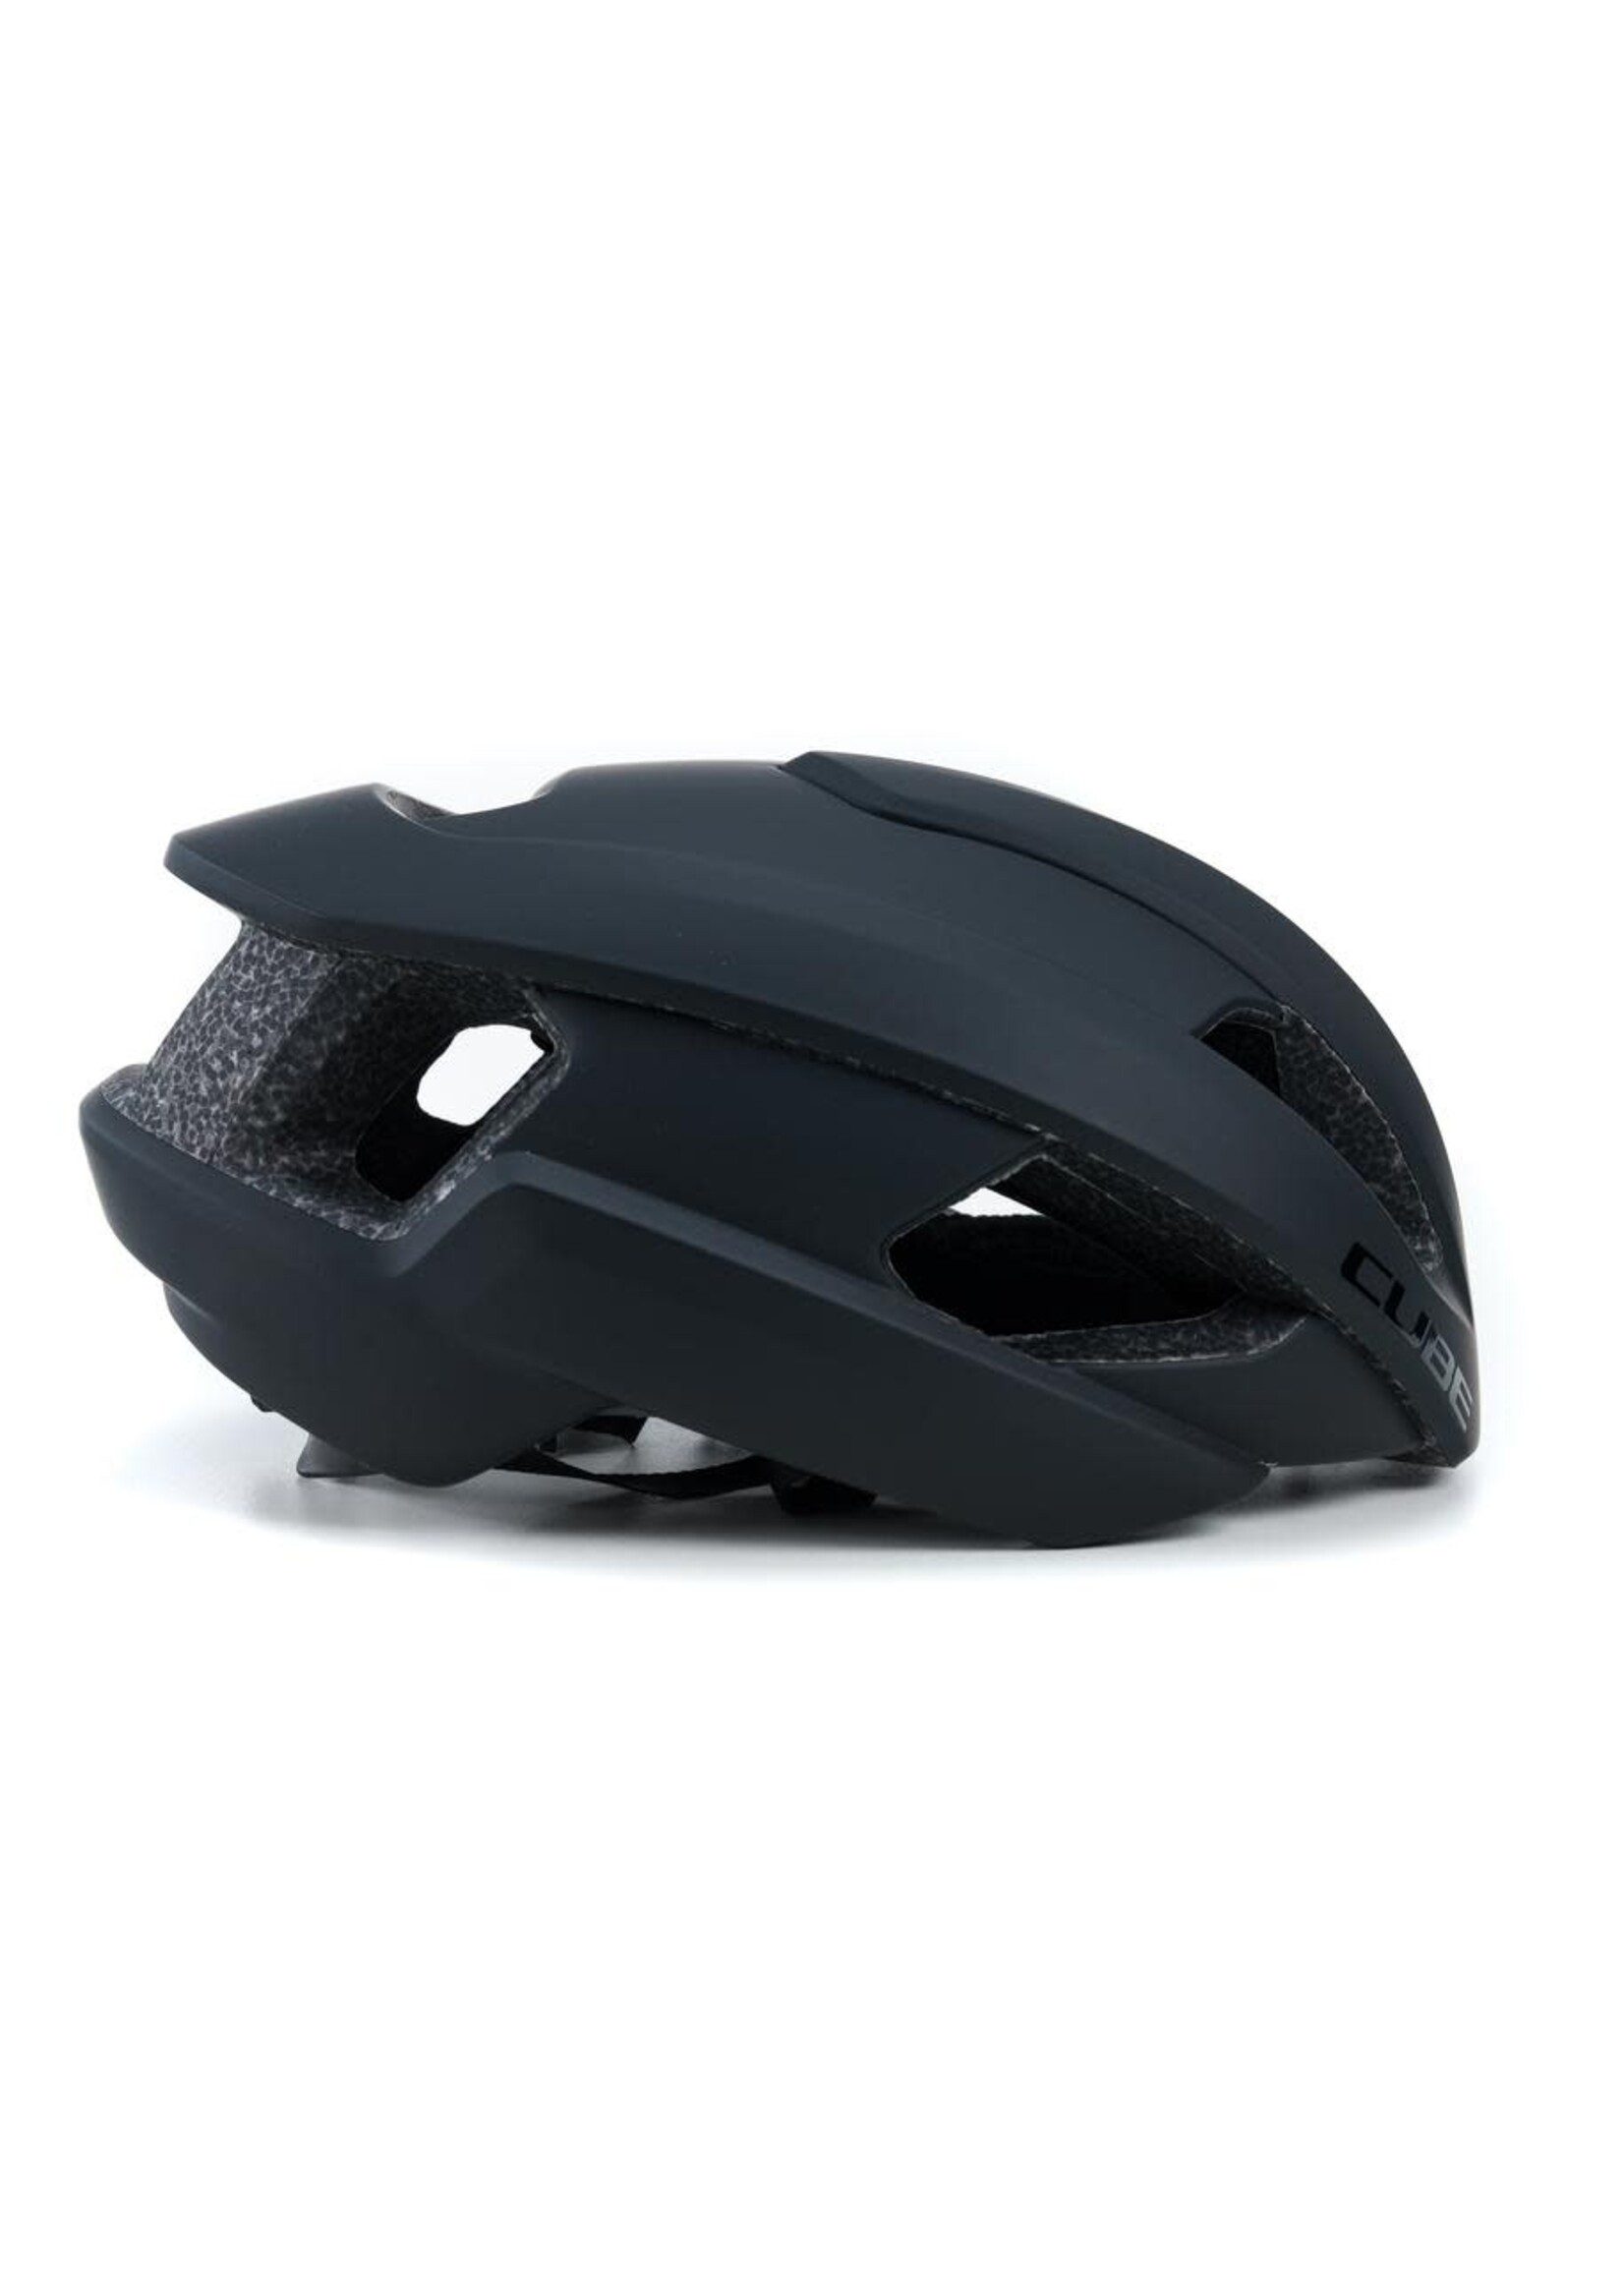 CUBE Helmet HERON - Black M (52-57cm)